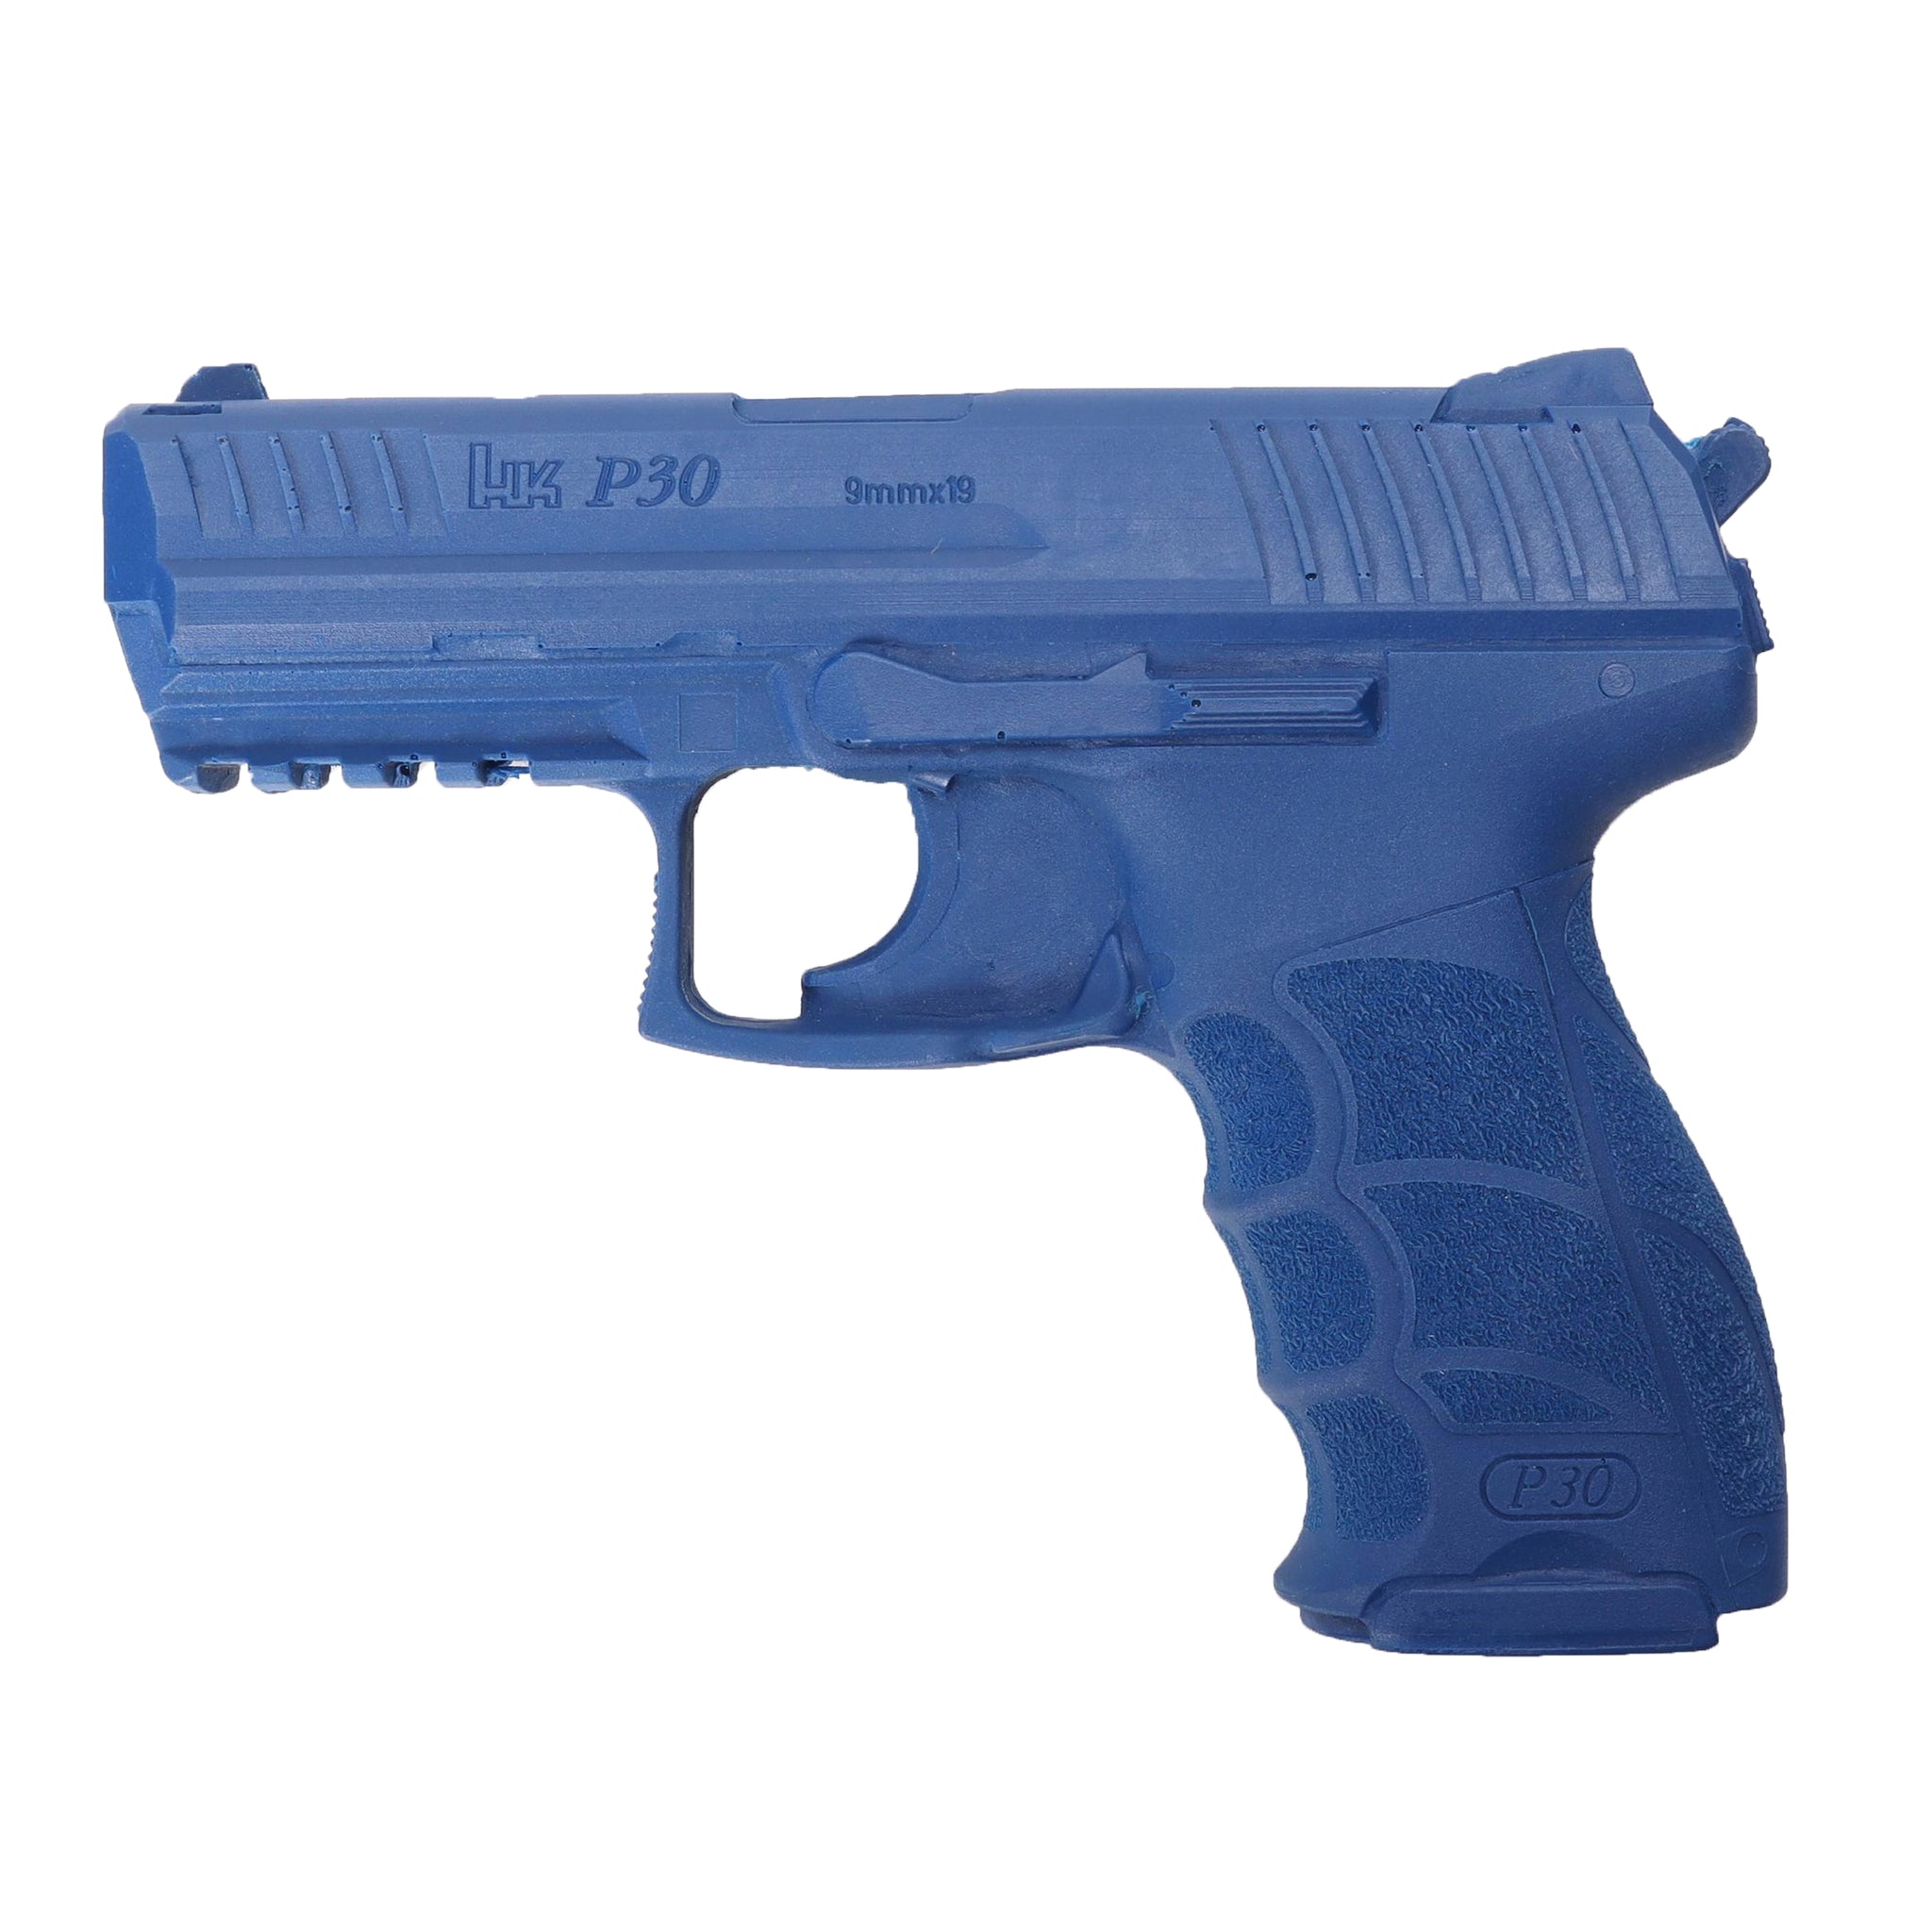 Blueguns Trainingswaffe Heckler & Koch P30